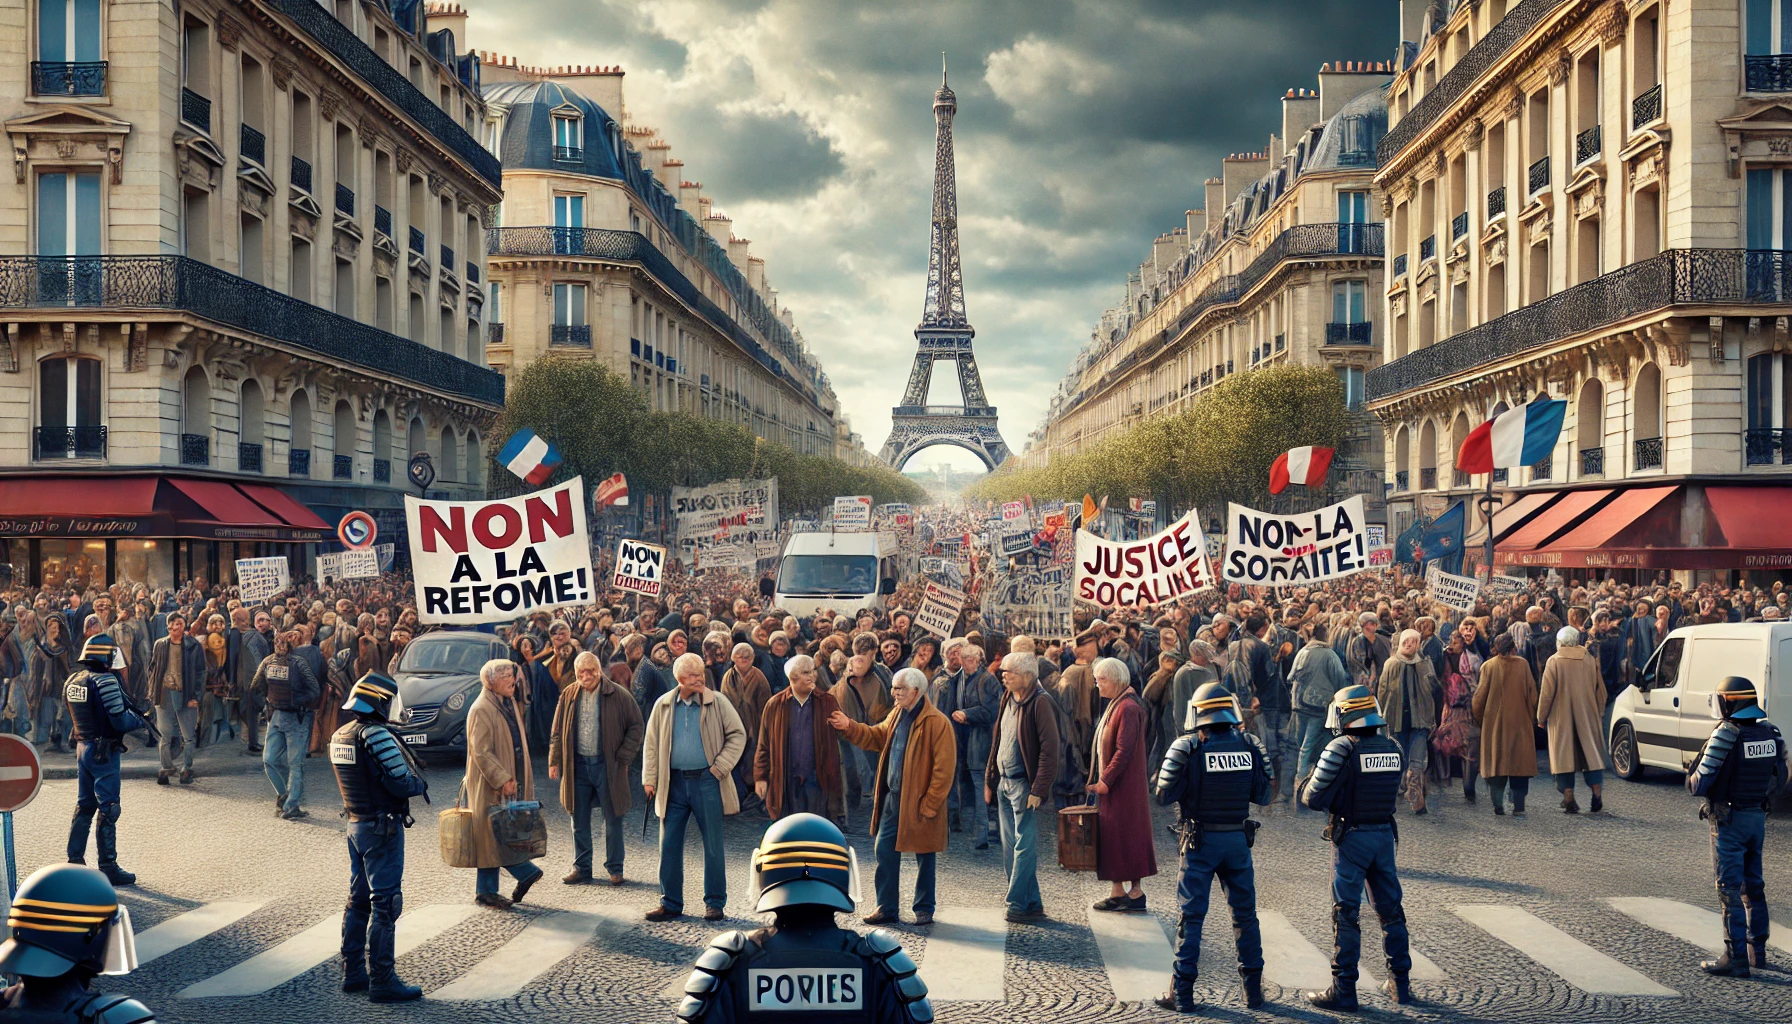 image dramatique capture l'essence des manifestations, avec des foules de protestataires dans les rues de Paris, les emblèmes iconiques en arrière-plan, et une atmosphère chargée de tension